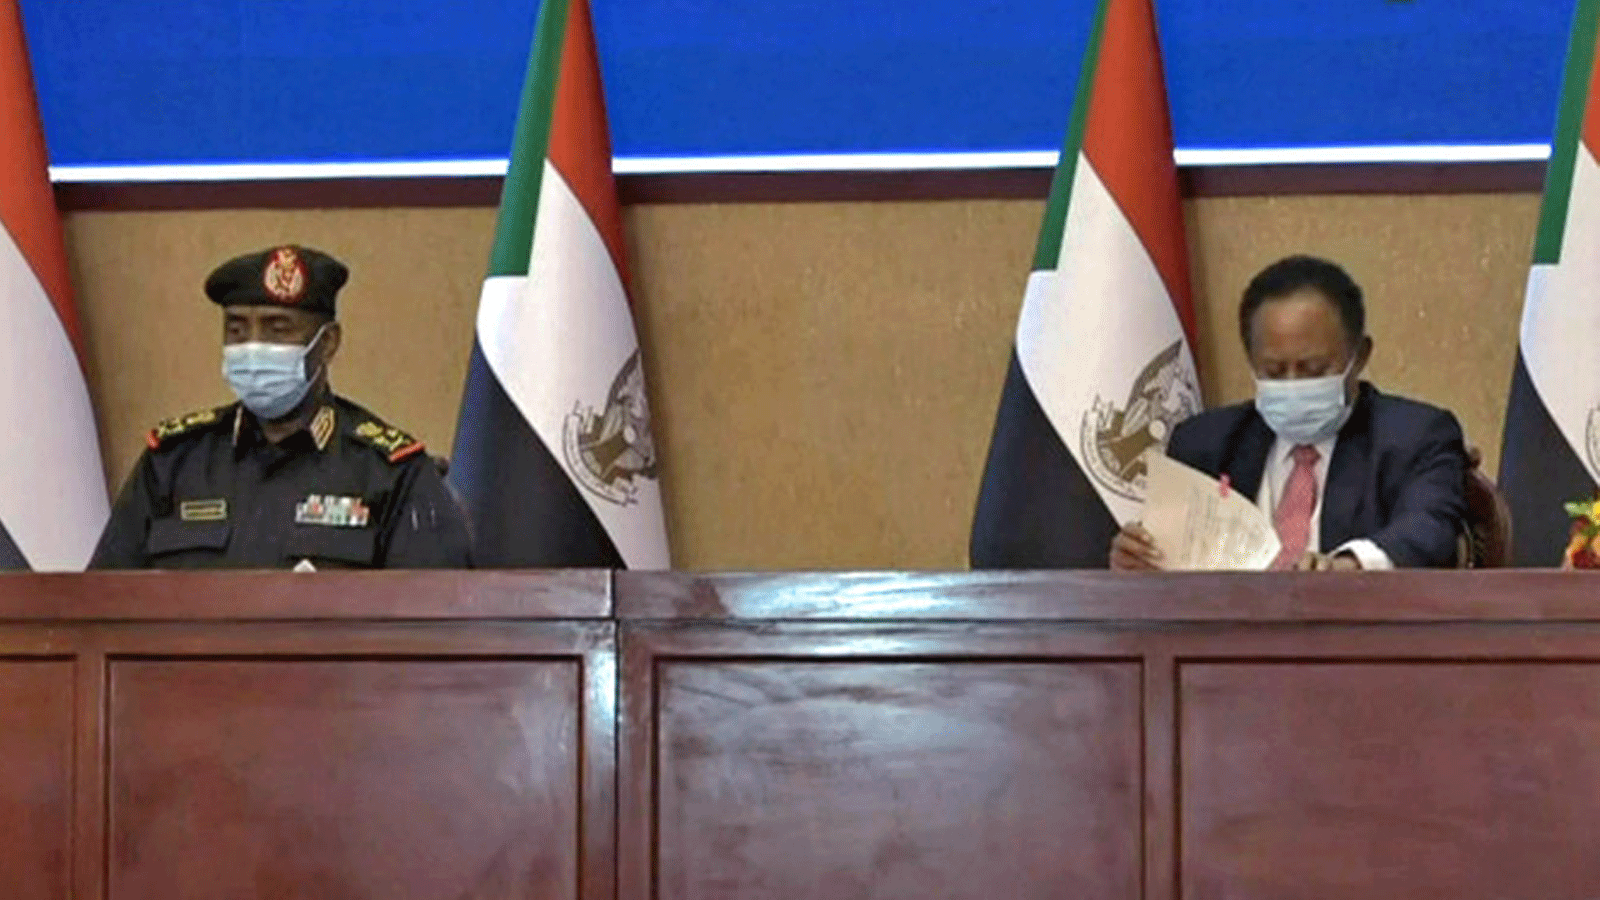  اللواء السوداني عبد الفتاح البرهان (إلى اليسار) ورئيس الوزراء عبد الله حمدوك يوقعان اتفاقًا لإعادة الانتقال إلى الحكم المدني في البلاد في 21 تشرين الثاني/نوفمبر 2021